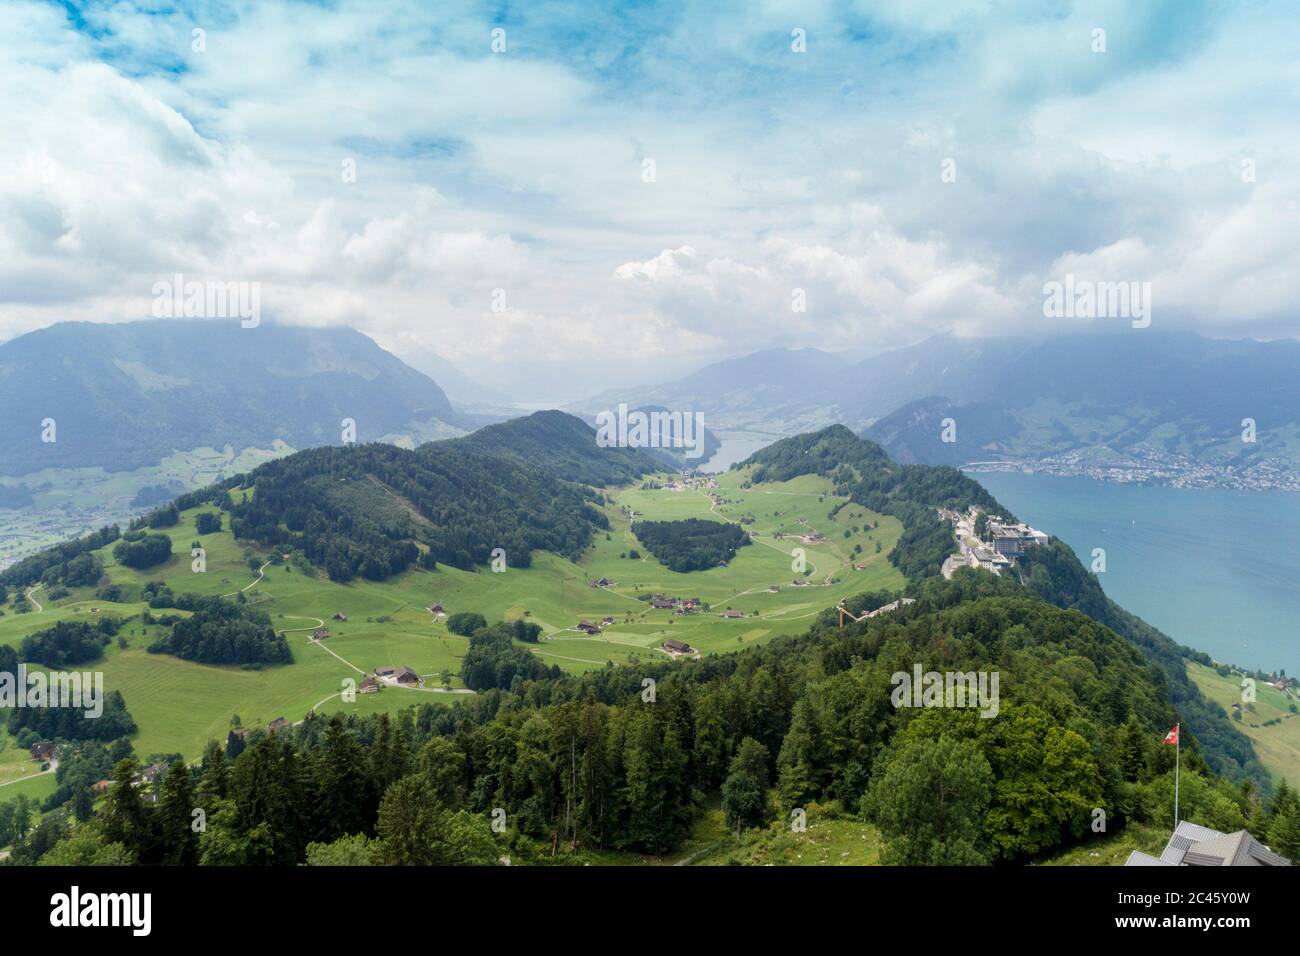 Luftaufnahme des Lungernsees von Birkenstock, Obwalden, Schweiz  Stockfotografie - Alamy